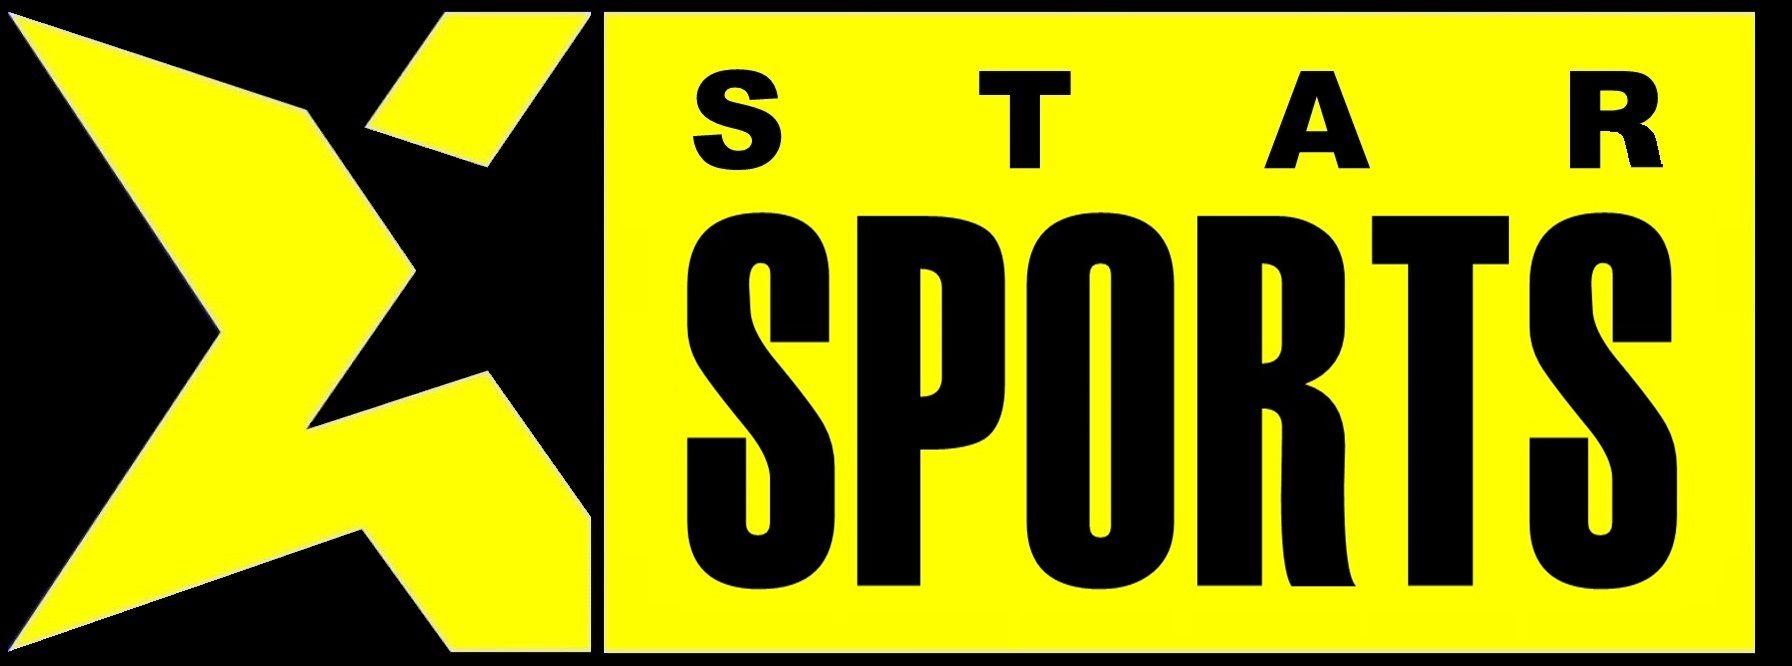 Yellow Sports Logo - Star Sports | Logopedia | FANDOM powered by Wikia